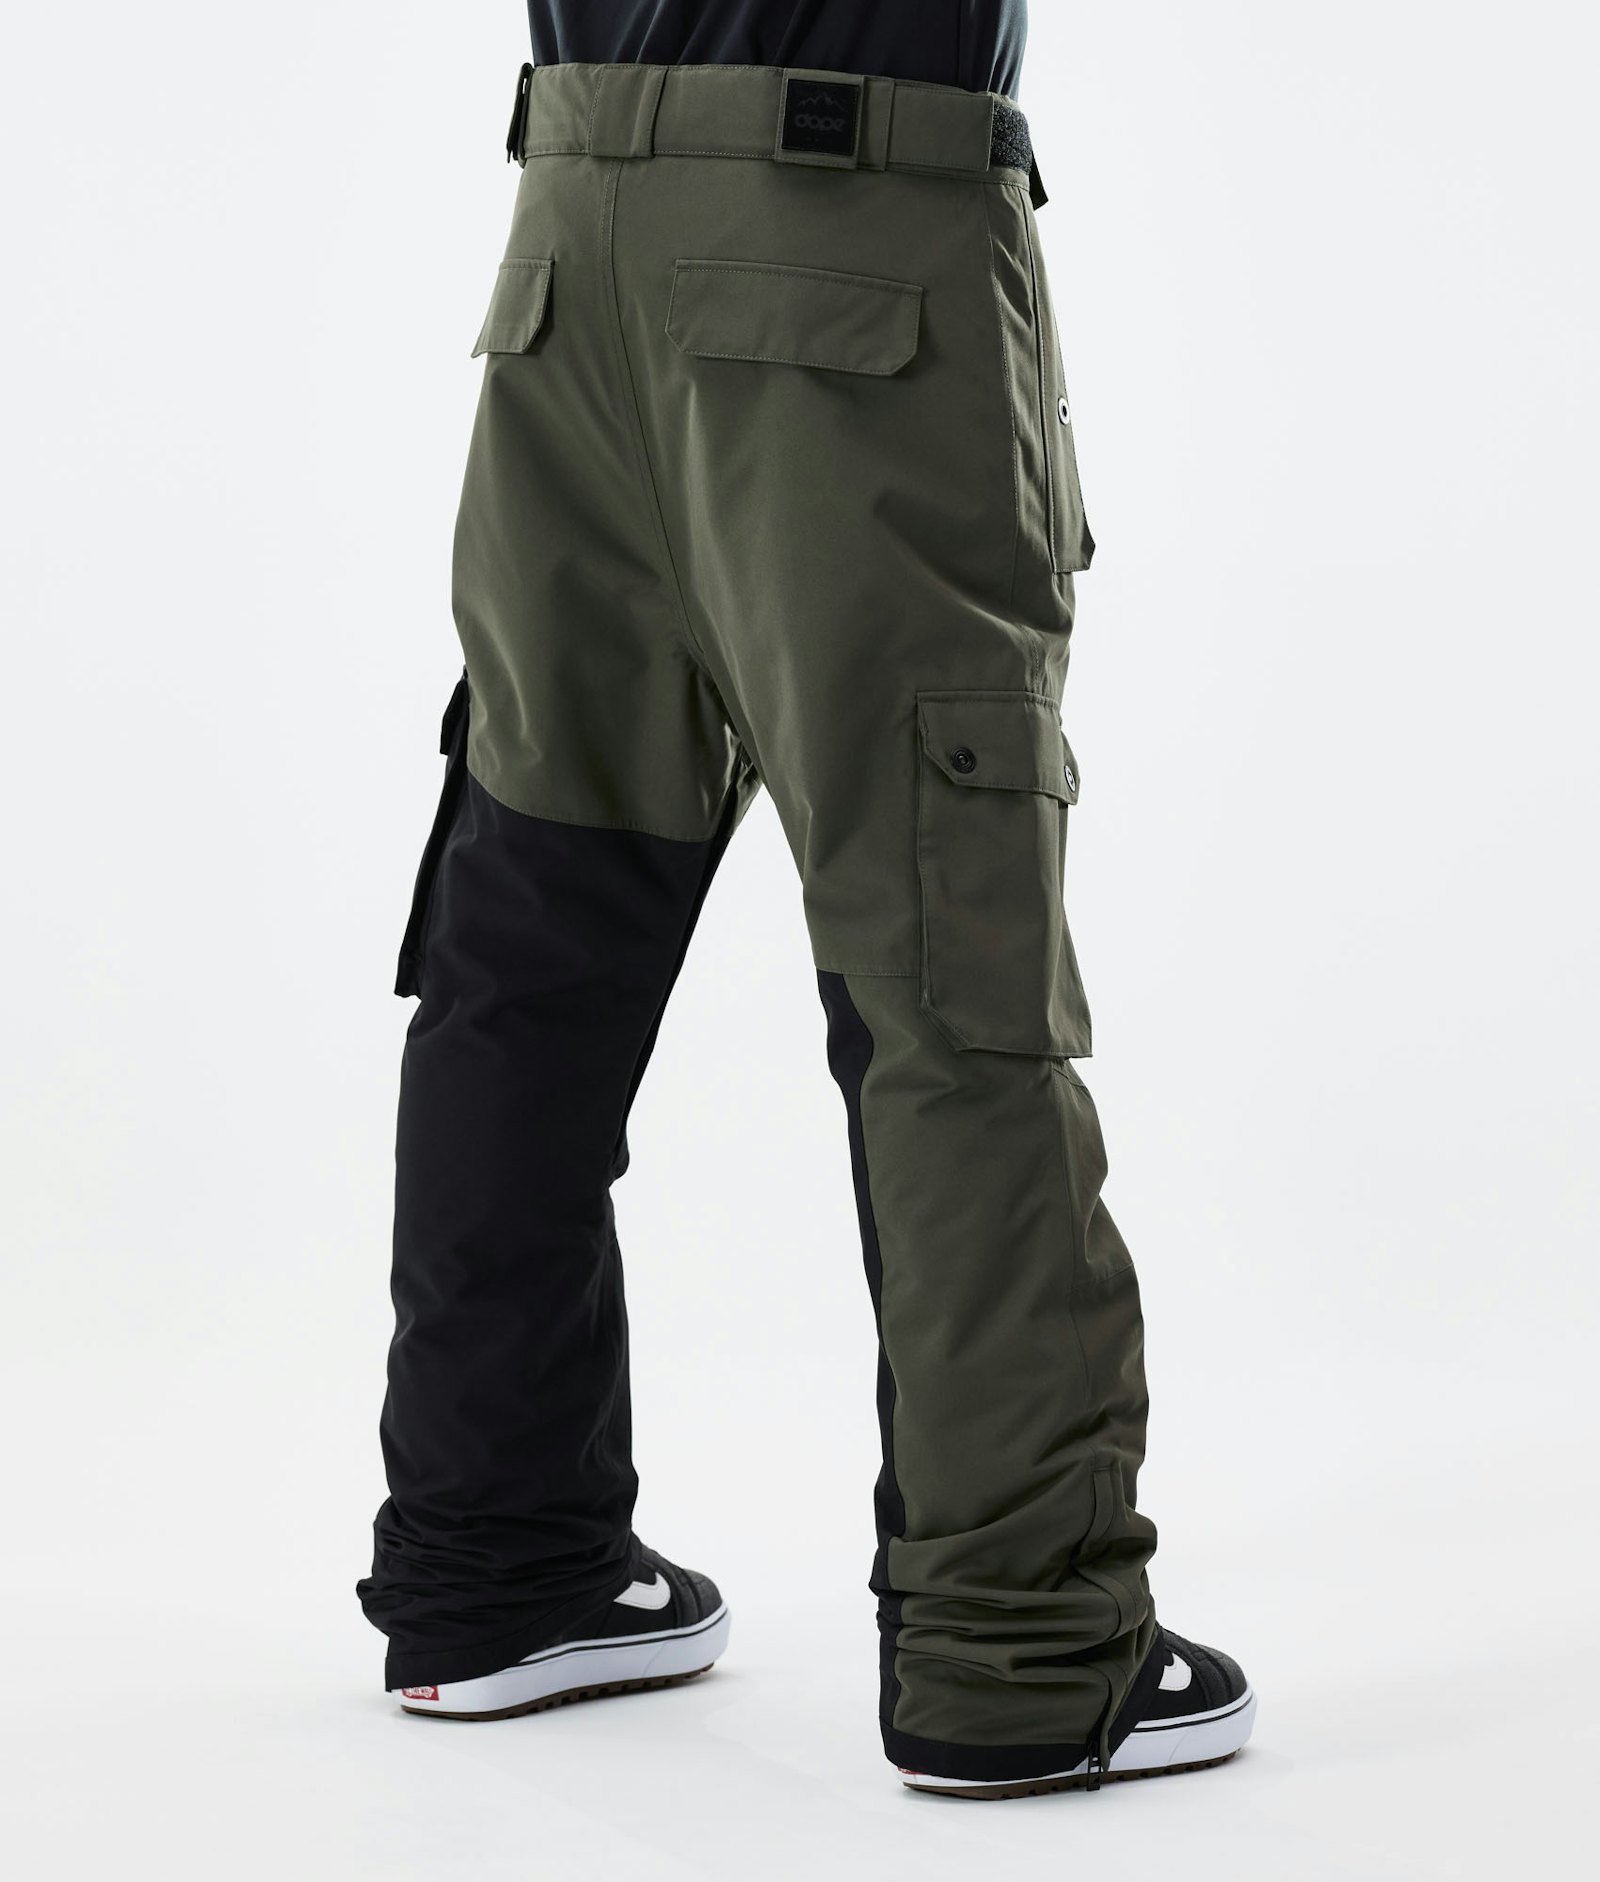 Adept 2021 Pantalon de Snowboard Homme Olive Green/Black